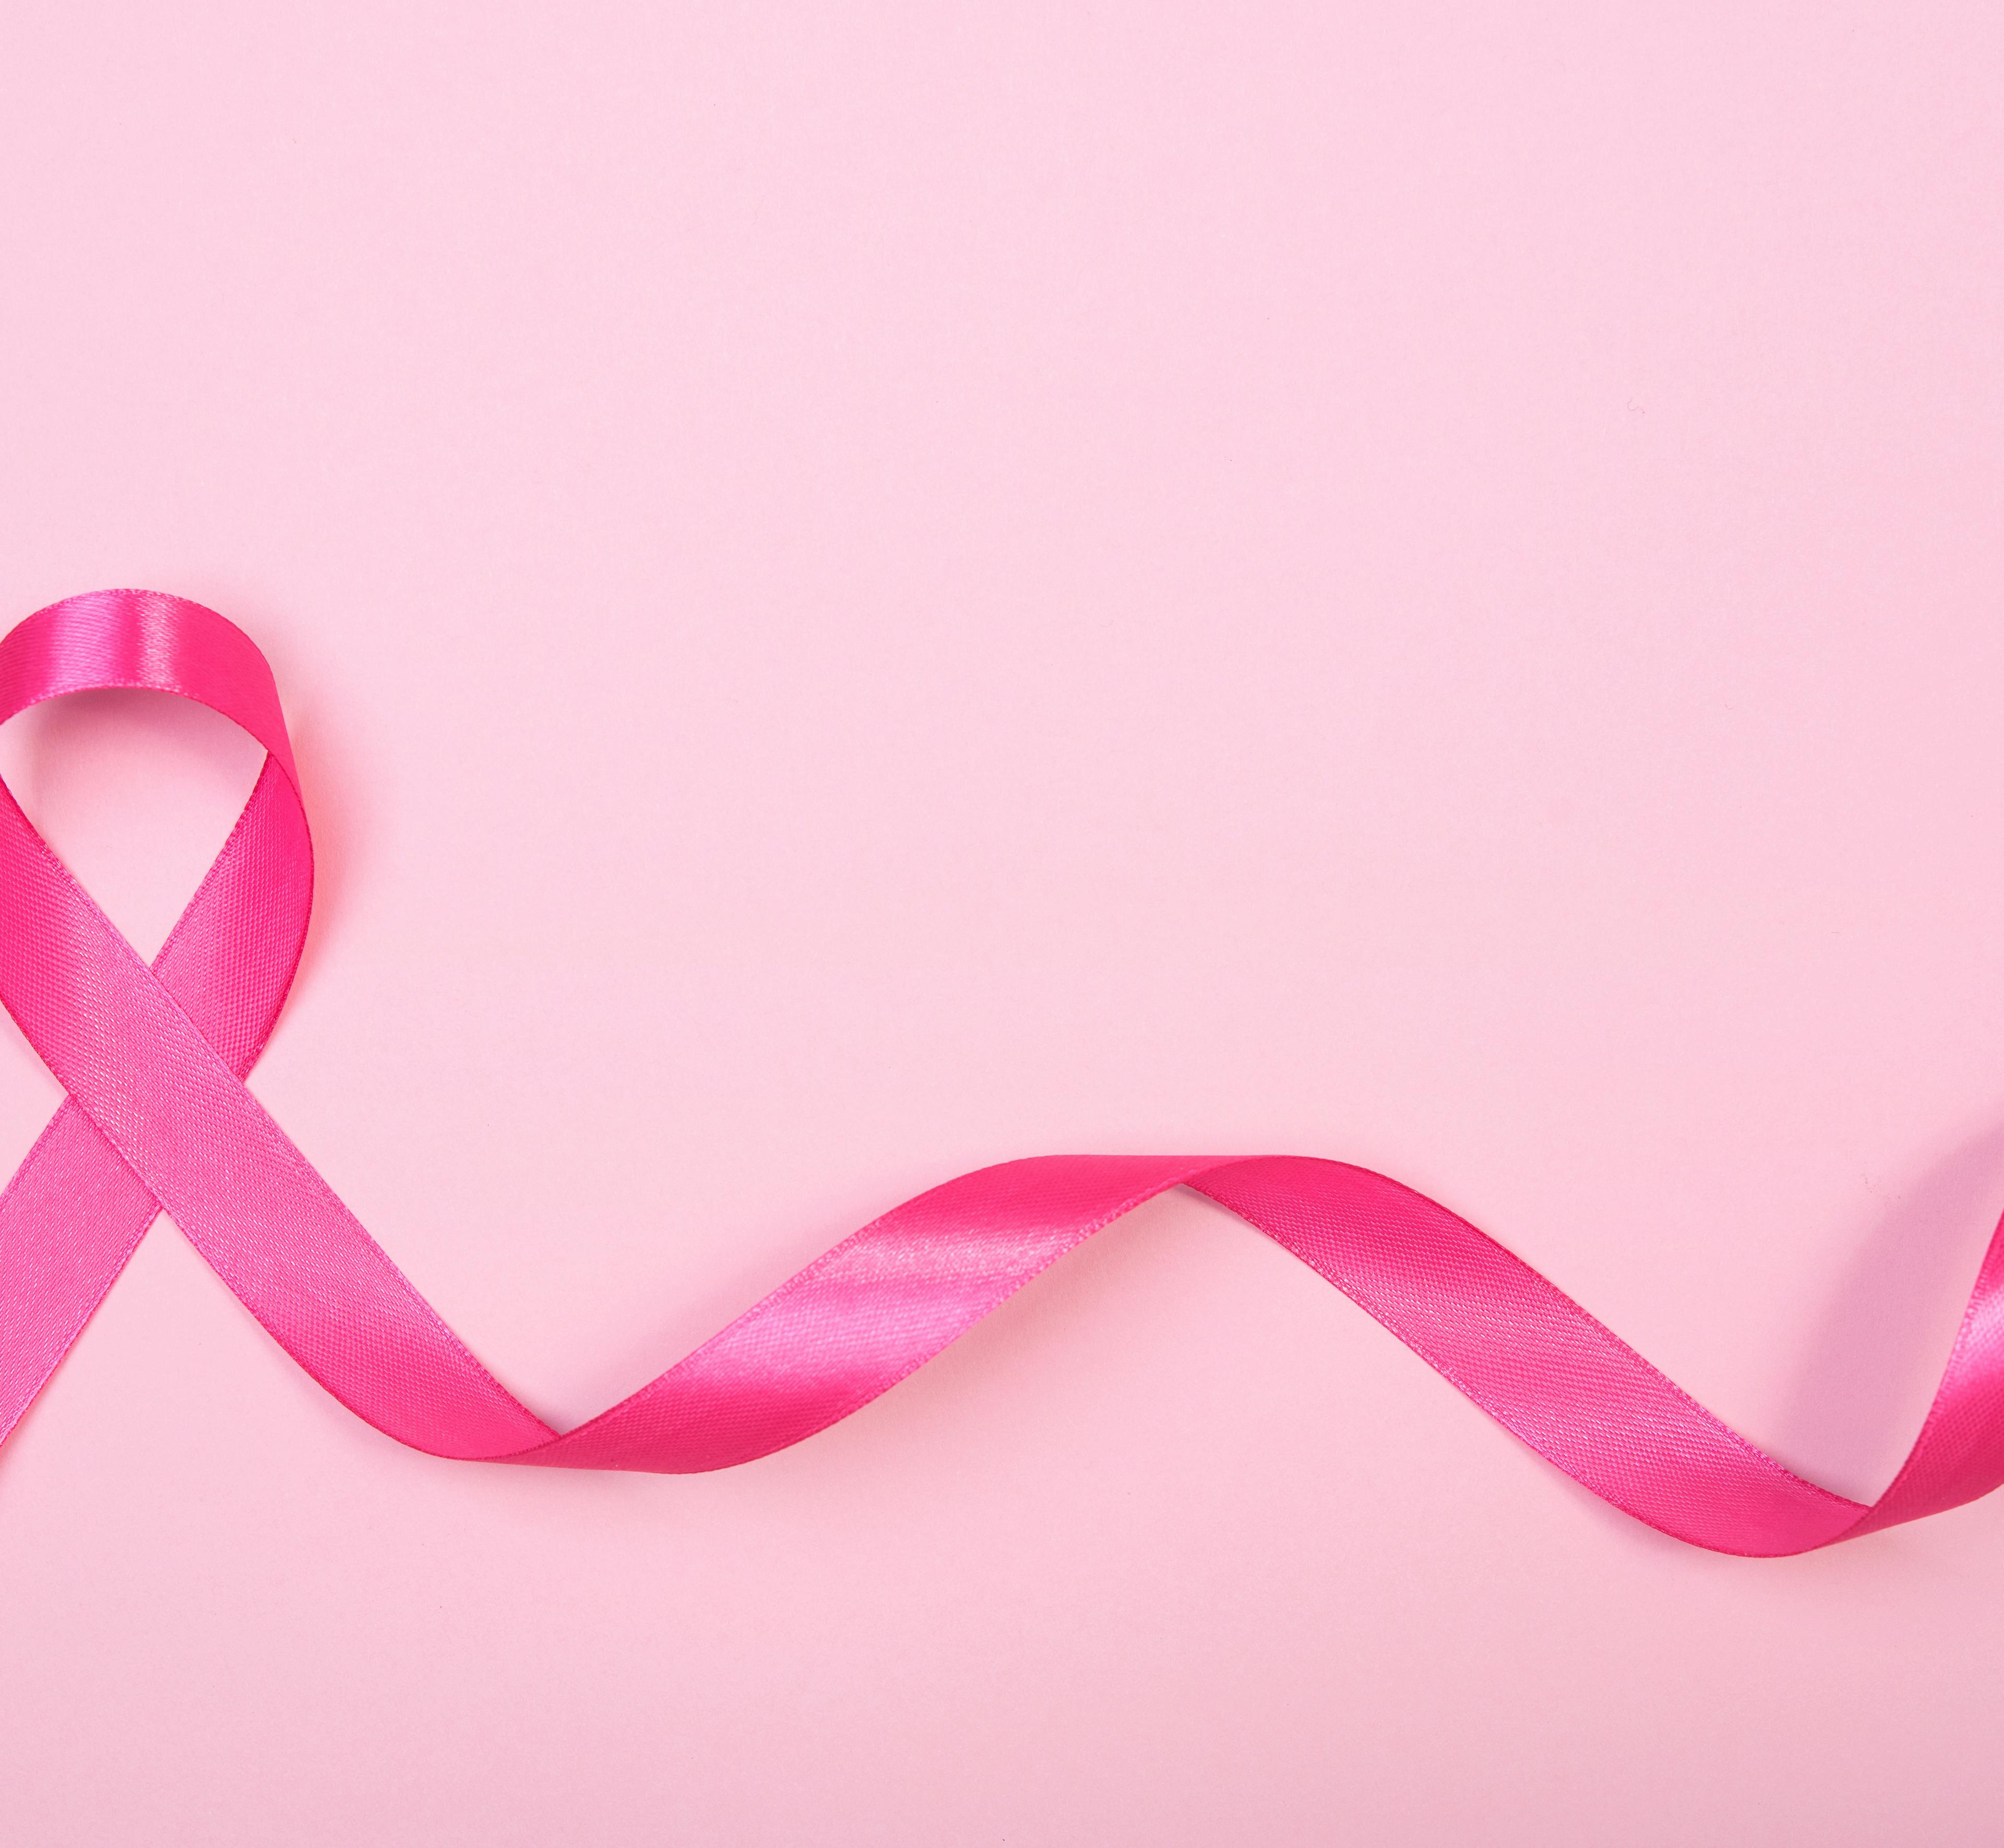 En savoir plus sur le cancer chez les femmes